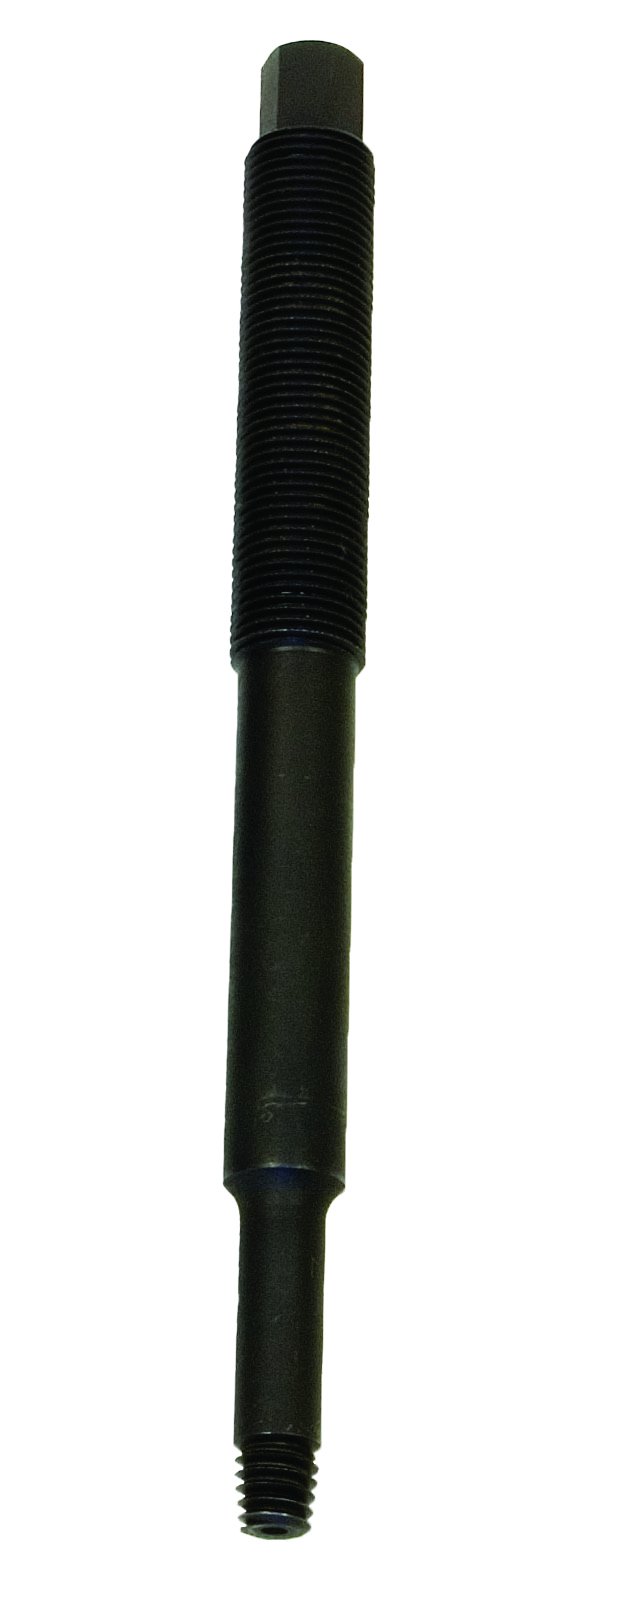 Lisle 65620 Abzieherschraube für gebrochene Steckerentferner, Schwarz